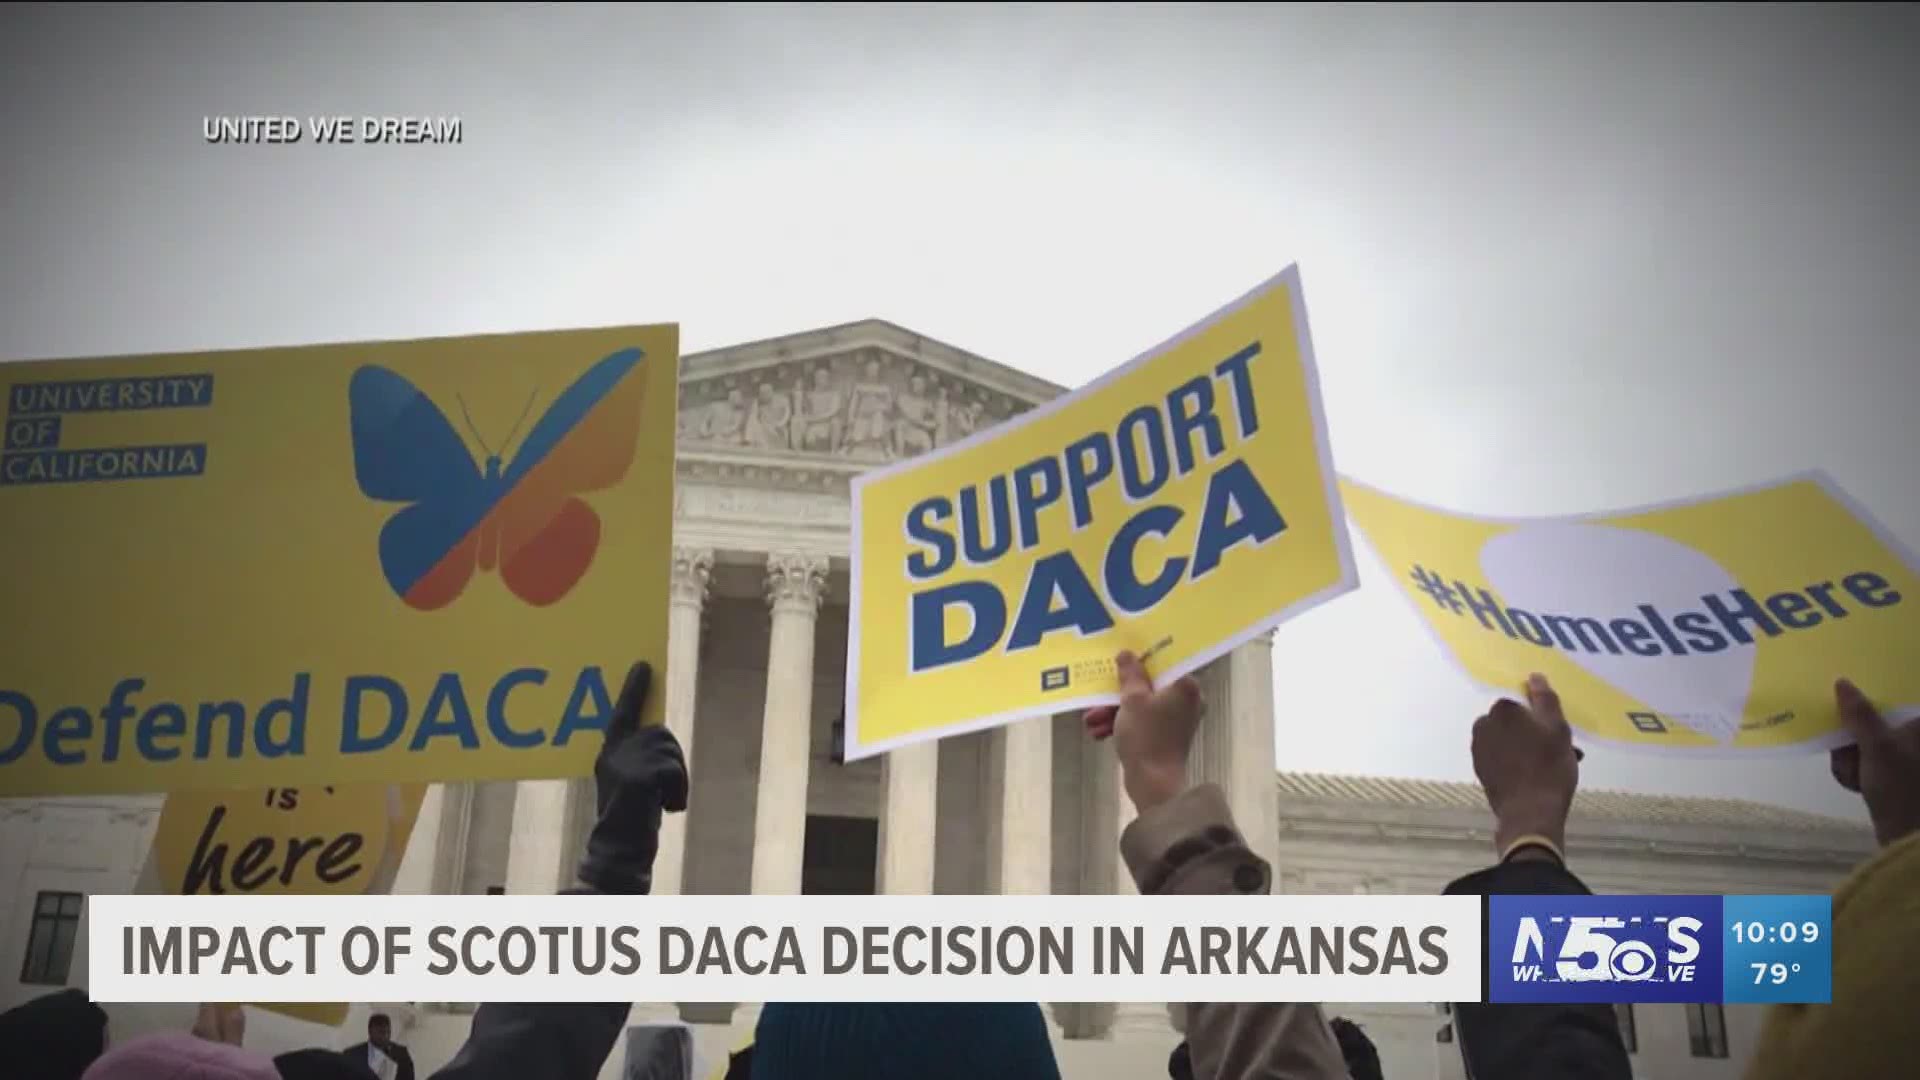 Impact of SCOTUS DACA decisions in Arkansas.